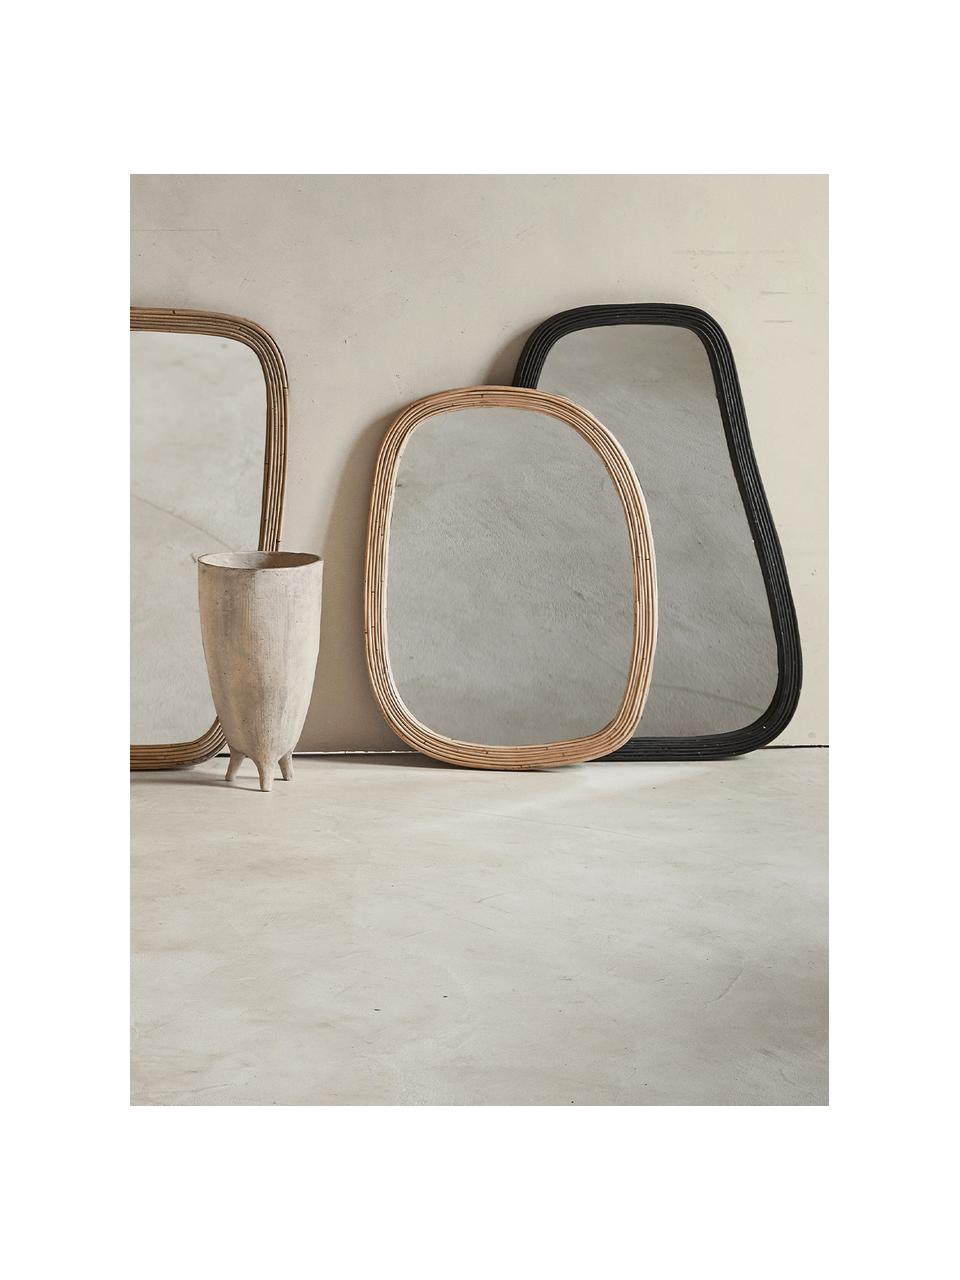 Handgemachter Anlehnspiegel Organic mit schwarzem Rattanrahmen, Spiegelfläche: Spiegelglas, Rahmen: Rattan, Schwarz, B 61 x H 120 cm